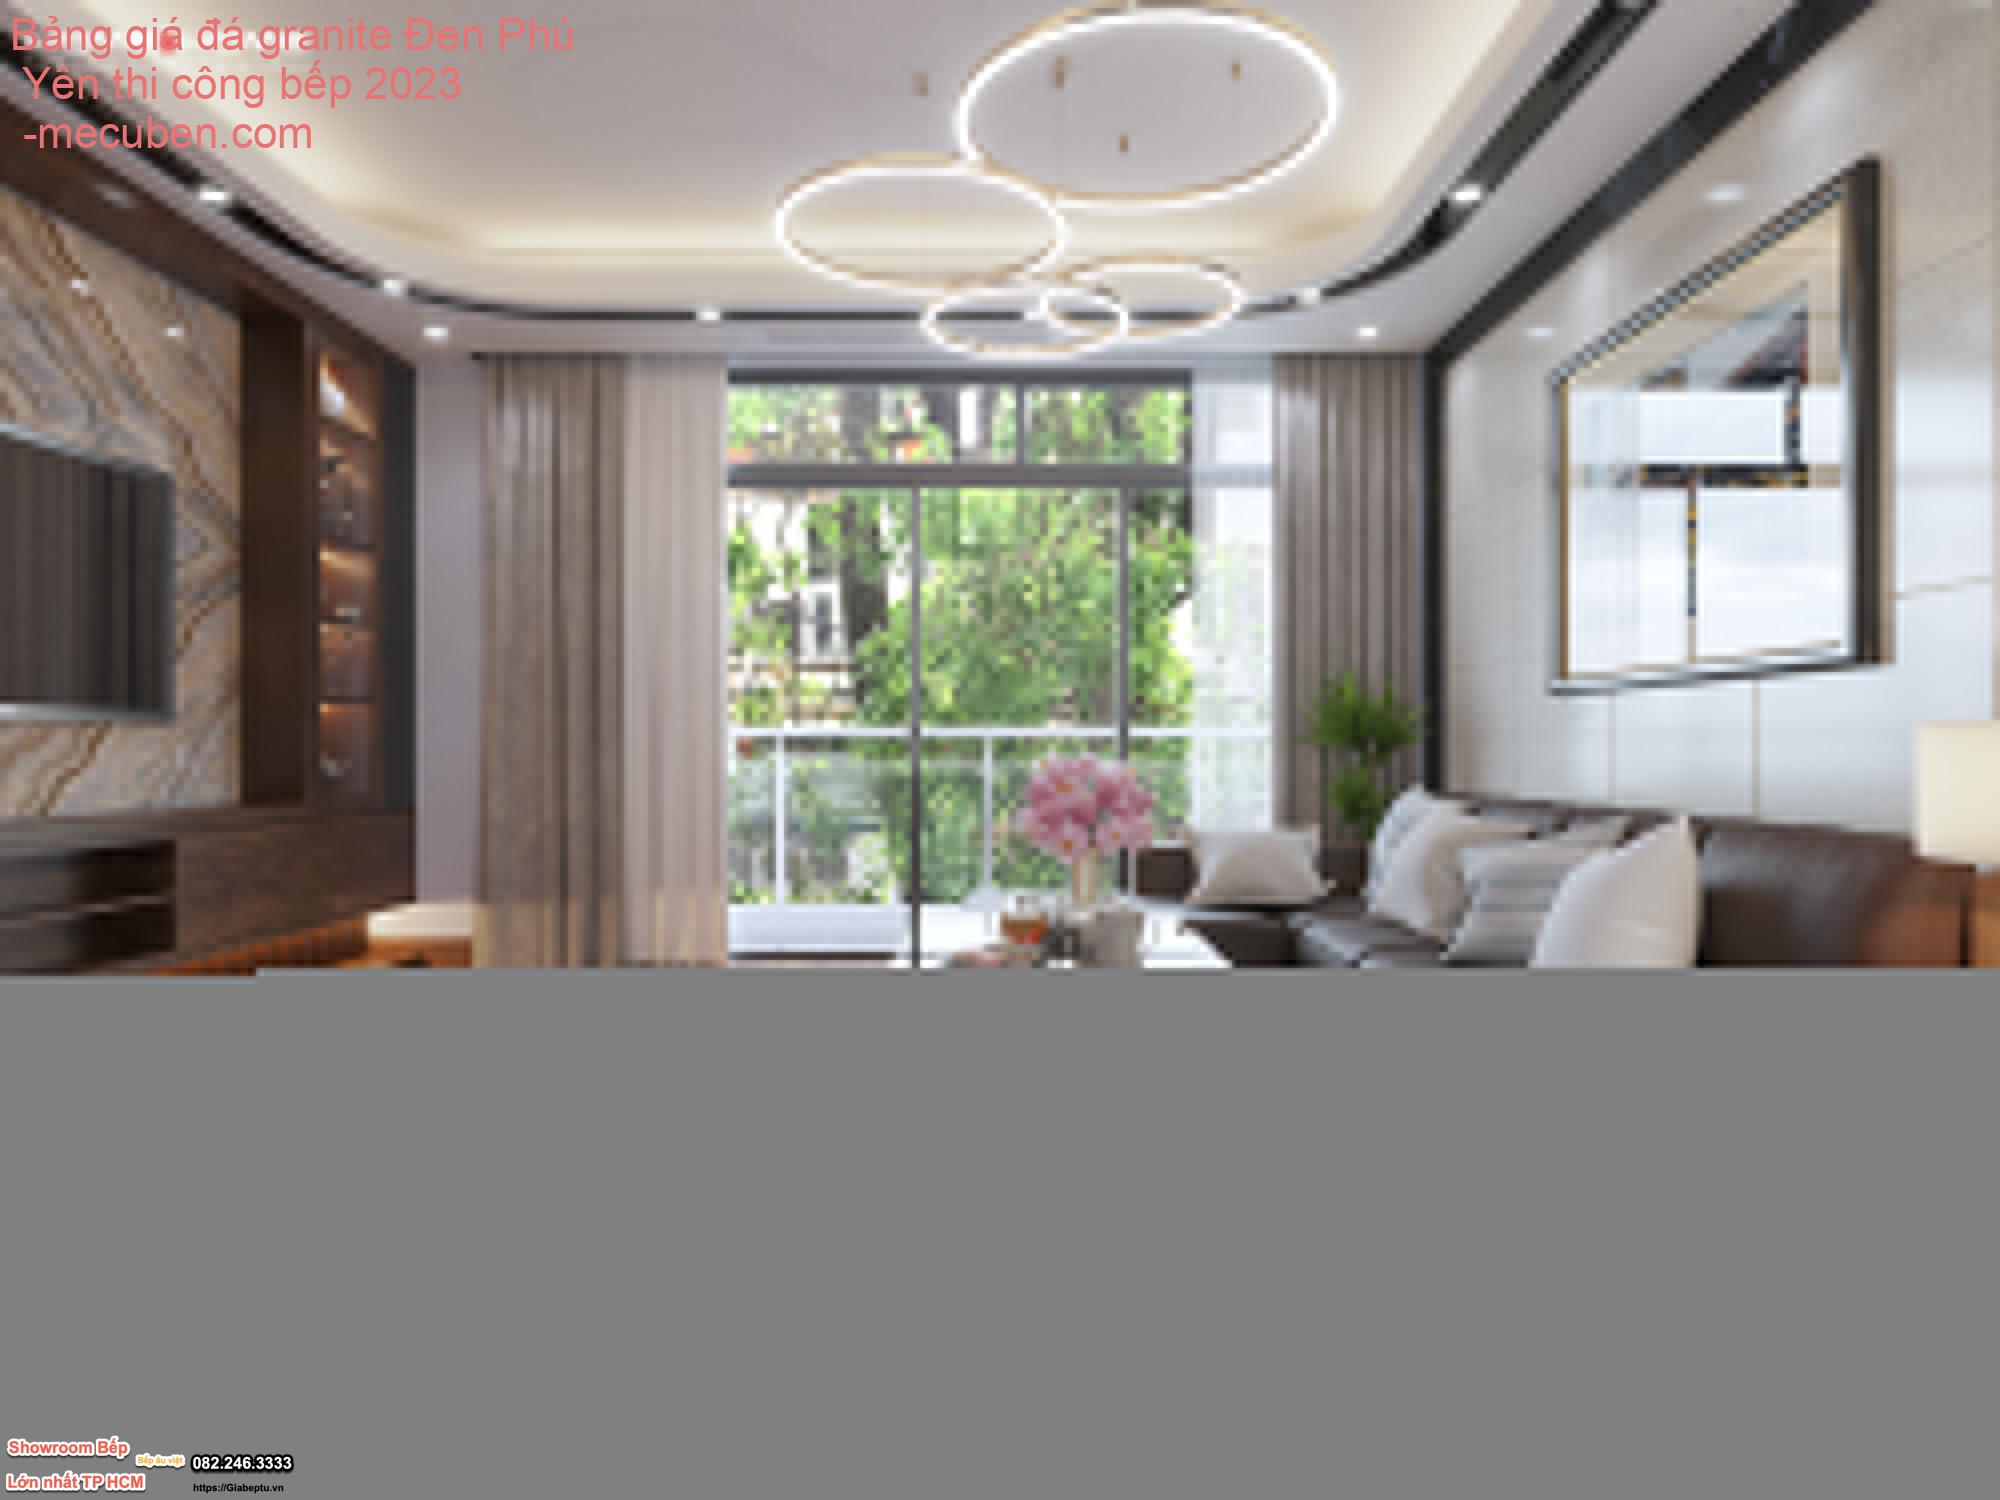 Bảng giá đá granite Đen Phú Yên thi công bếp 2023